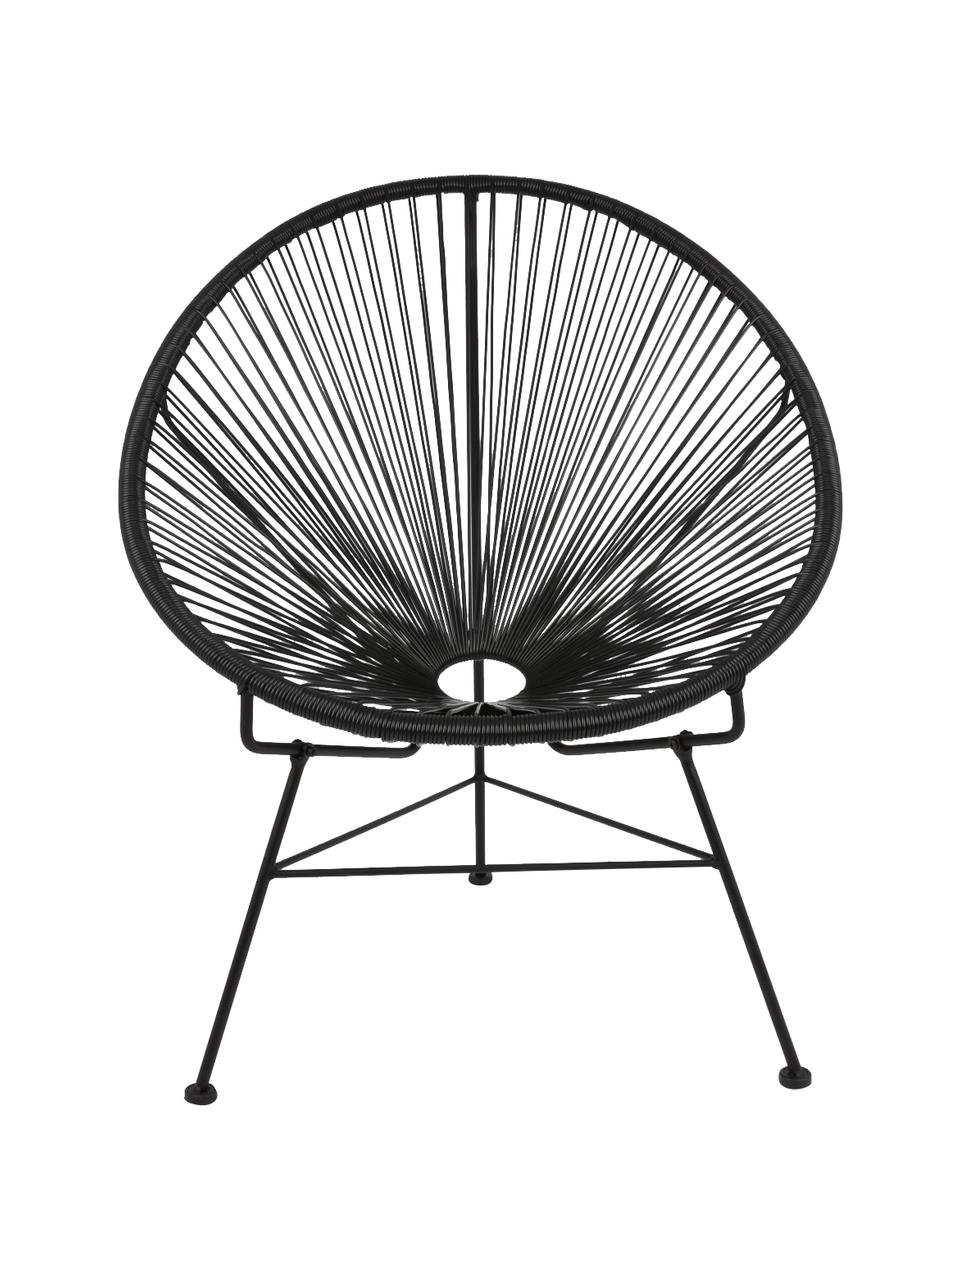 Fotel wypoczynkowy ze splotu z tworzywa sztucznego Bahia, Czarny, S 81 x G 73 cm